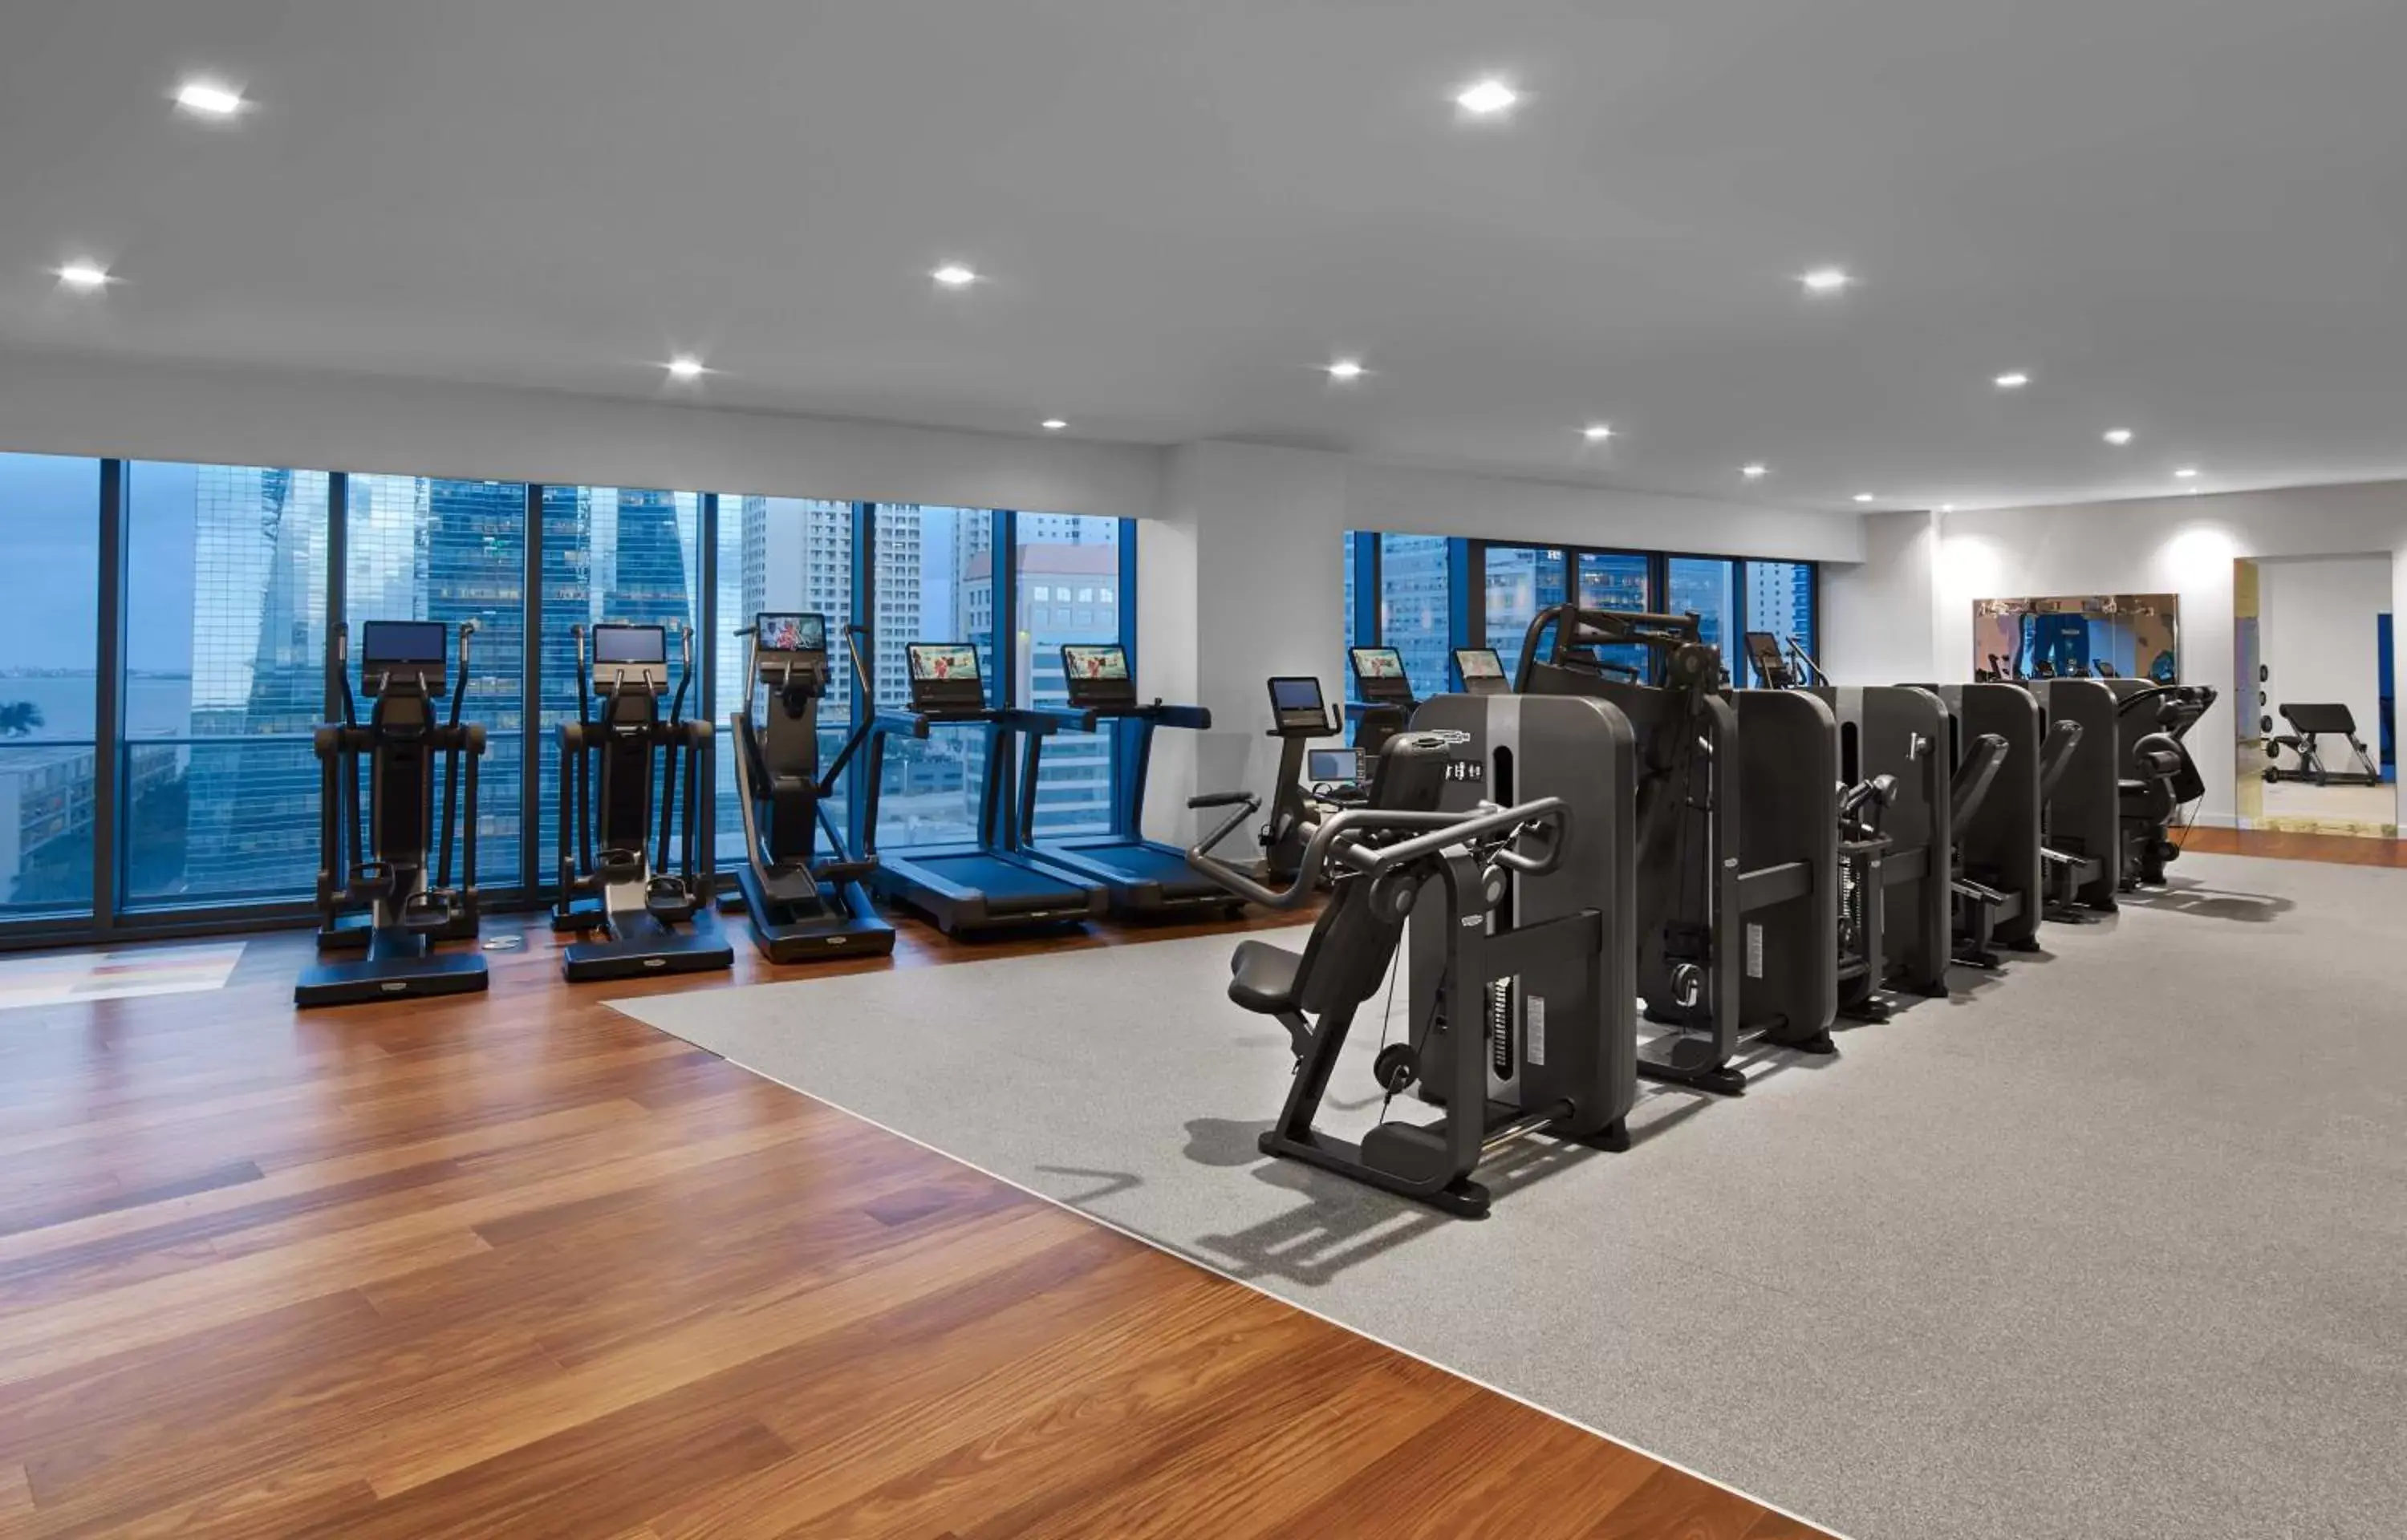 Fitness centre/facilities, Fitness Center/Facilities in SLS Brickell